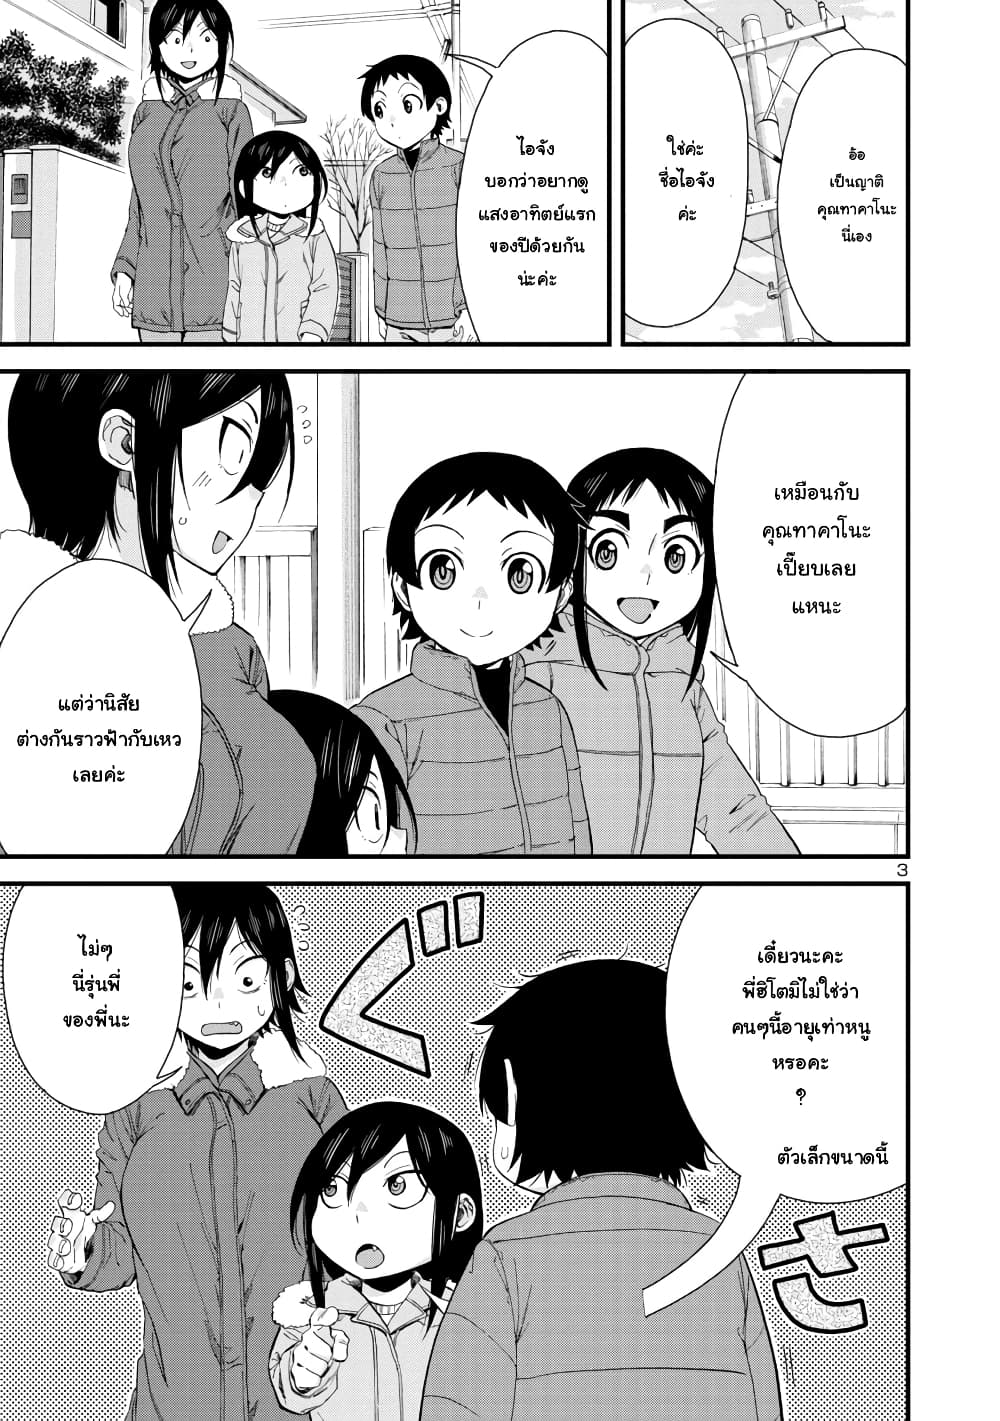 Hitomi-chan Is Shy With Strangers วันๆของน้องฮิโตมิก็เป็นแบบนี้แหล่ะ 47-47